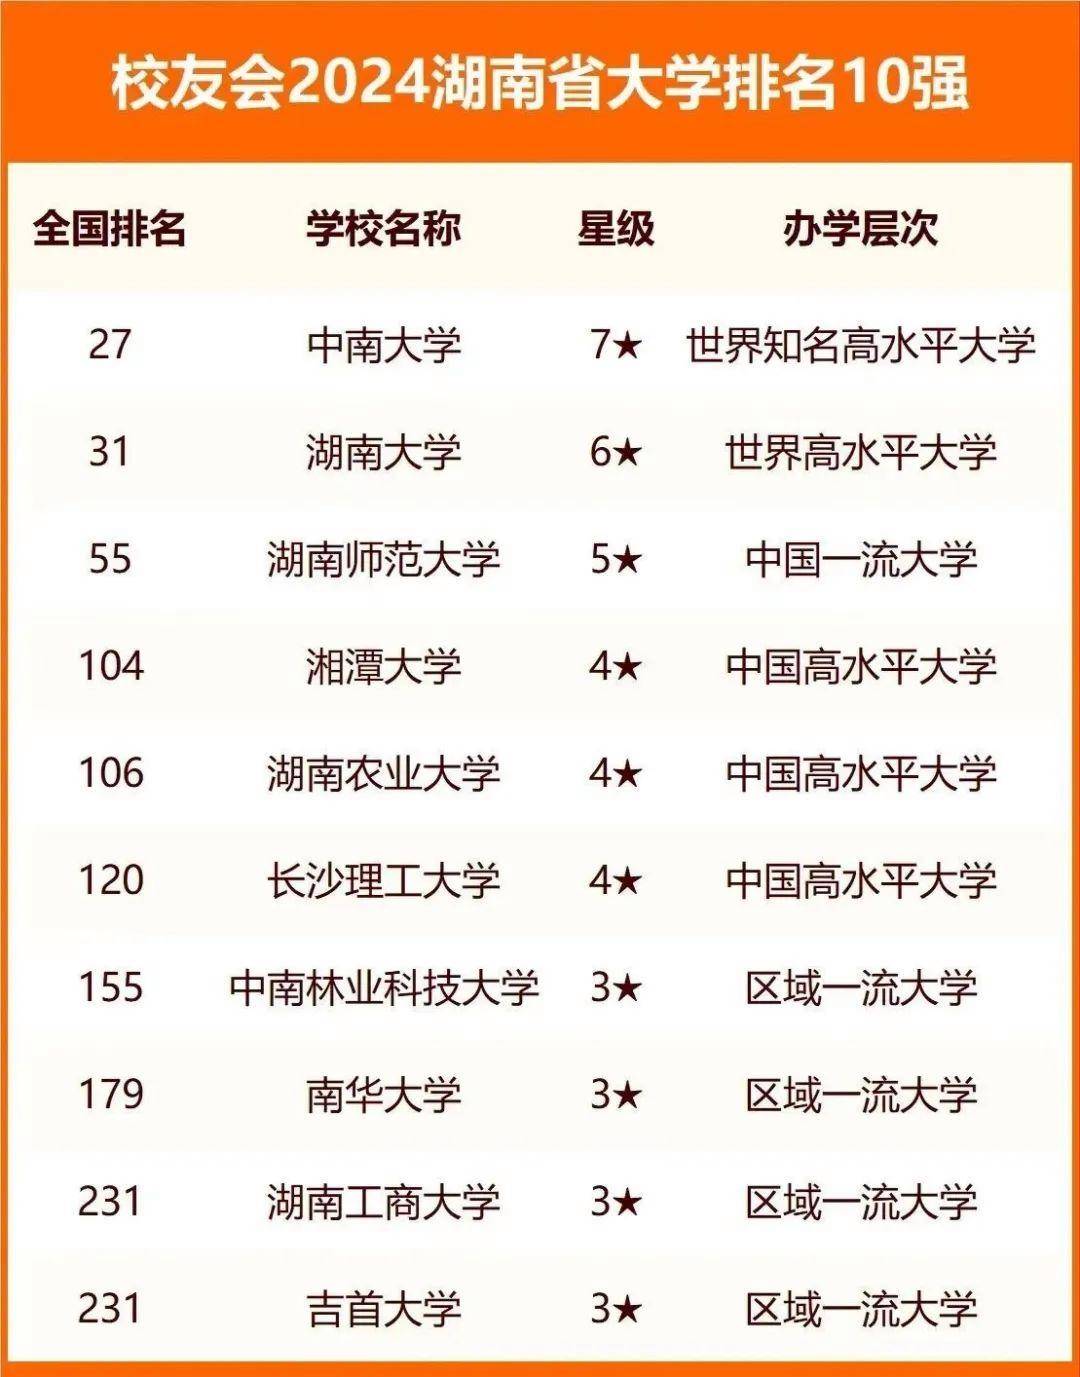 国防科技大学,位于湖南省长沙市,是985工程建设高校,211工程建设高校